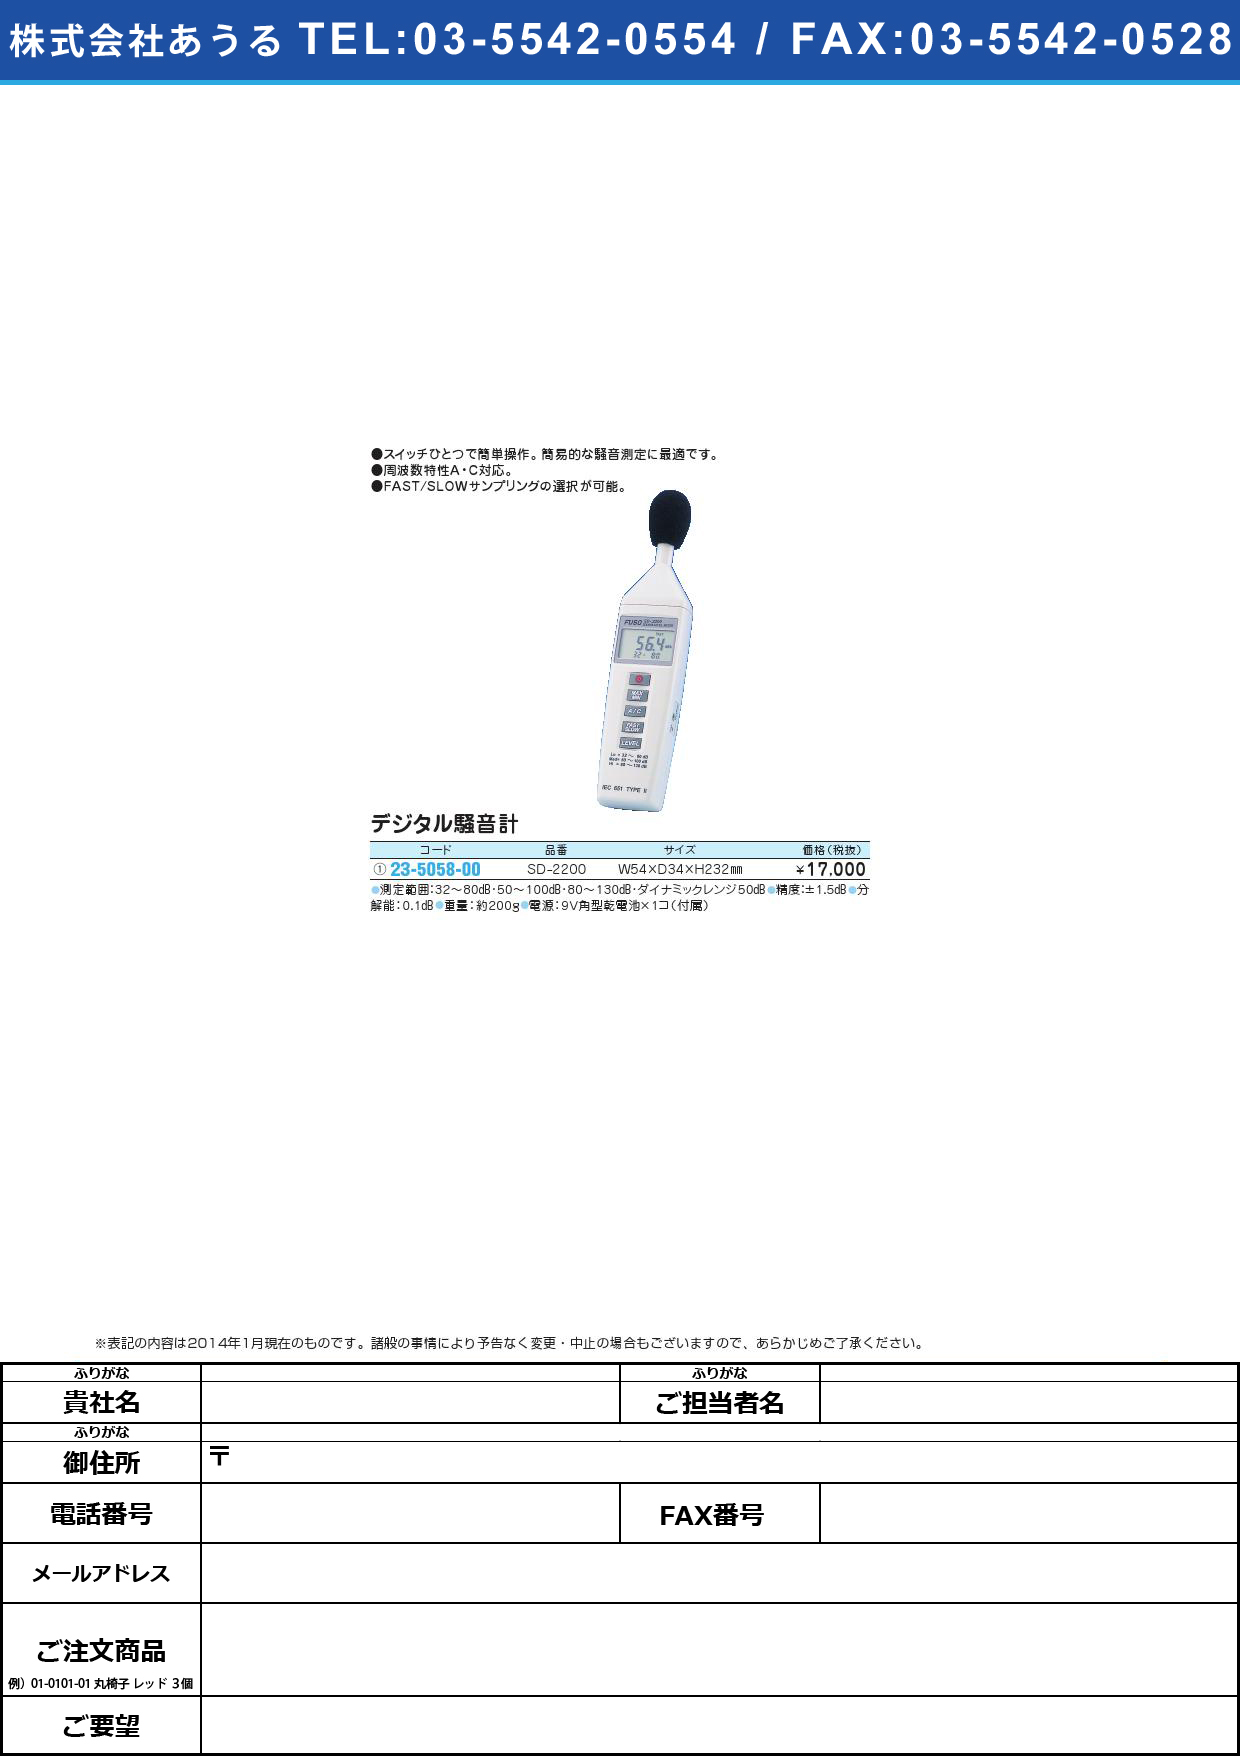 (23-5058-00)デジタル騒音計 ﾃﾞｼﾞﾀﾙｿｳｵﾝｹｲ(23-5058-00)SD-2200【1台単位】【2014年カタログ商品】